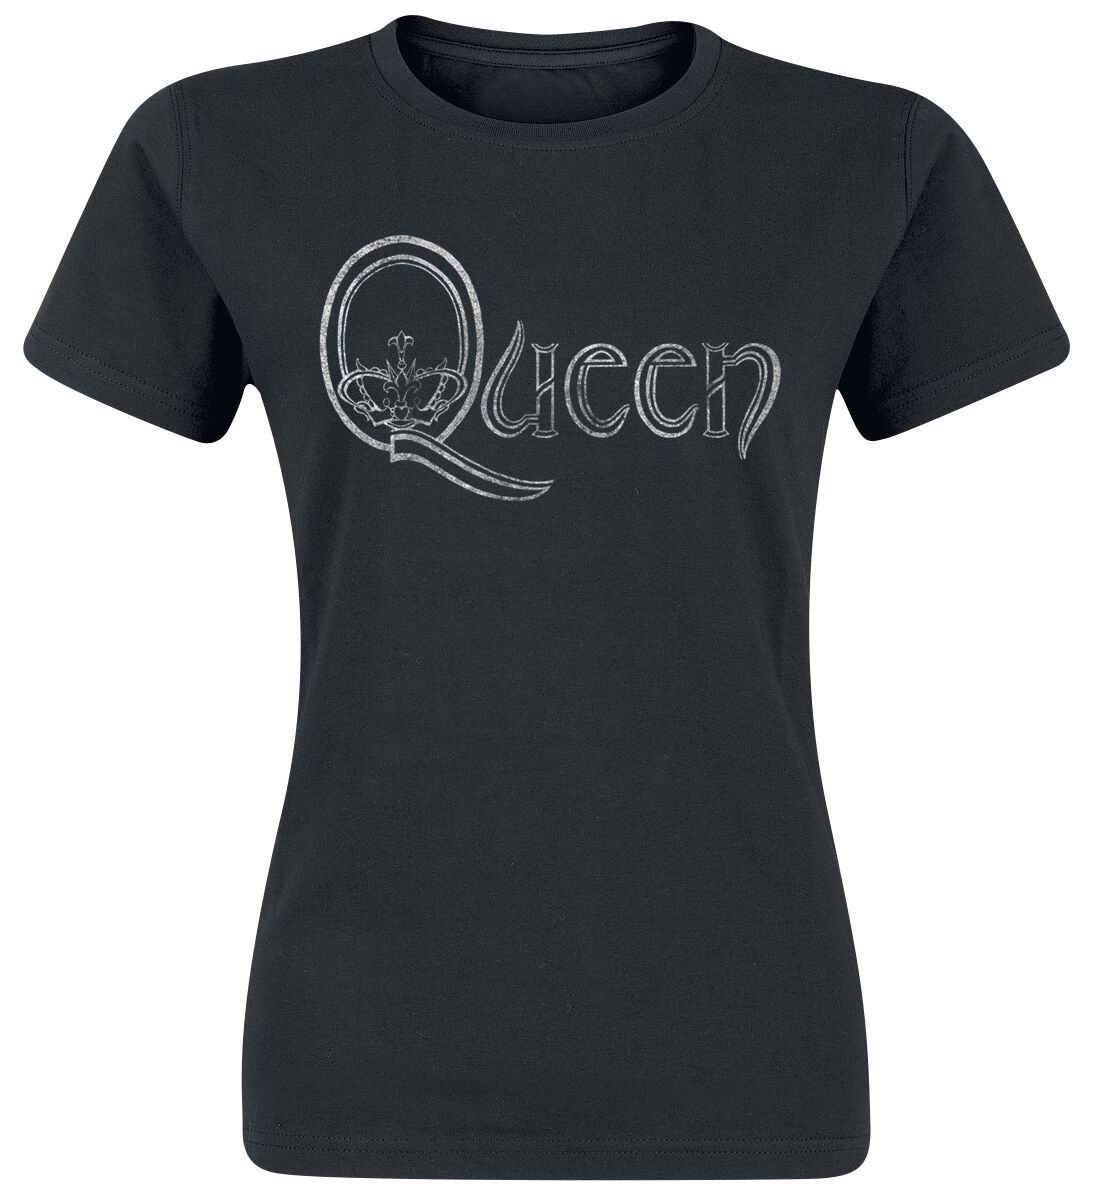 T-Shirt Manches courtes de Queen - Logo - S à XXL - pour Femme - noir